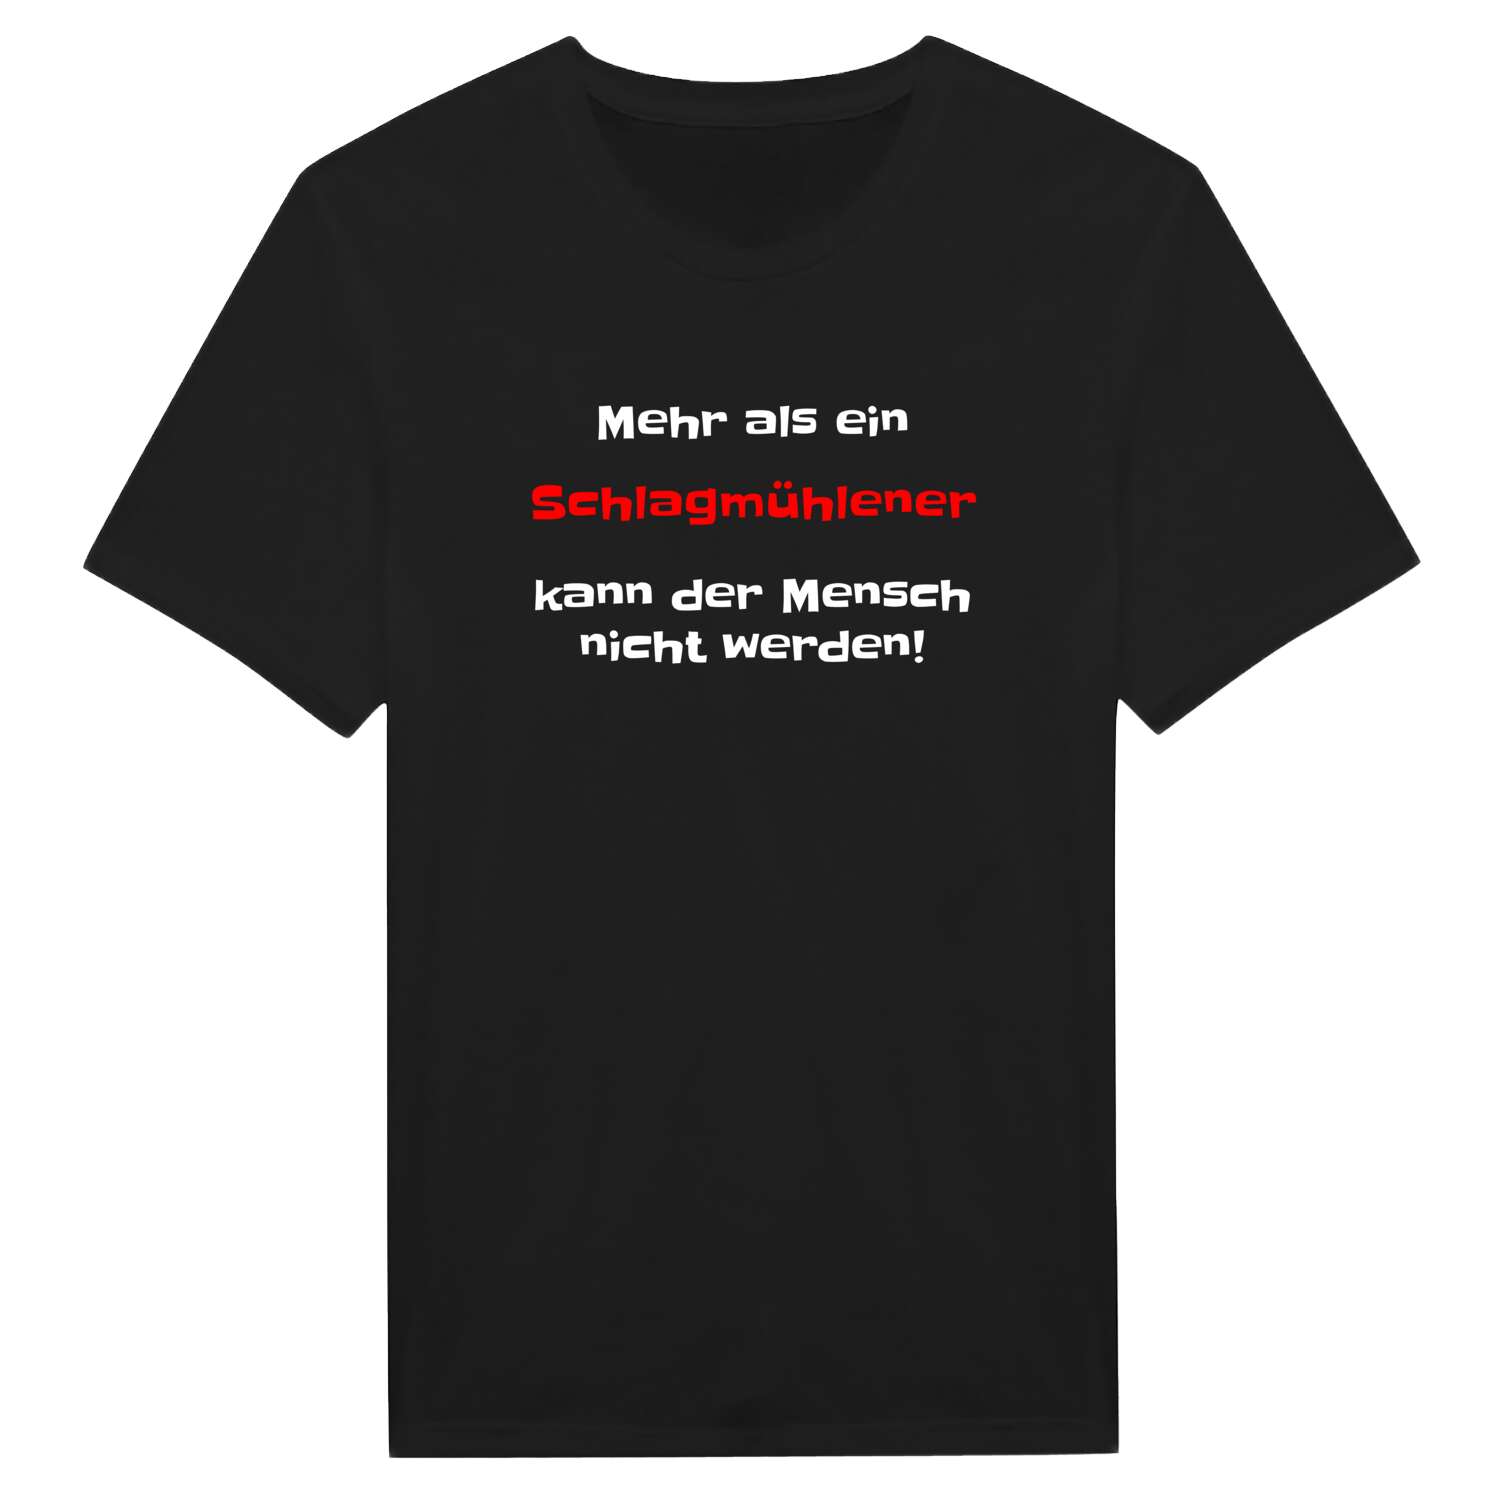 Schlagmühle T-Shirt »Mehr als ein«